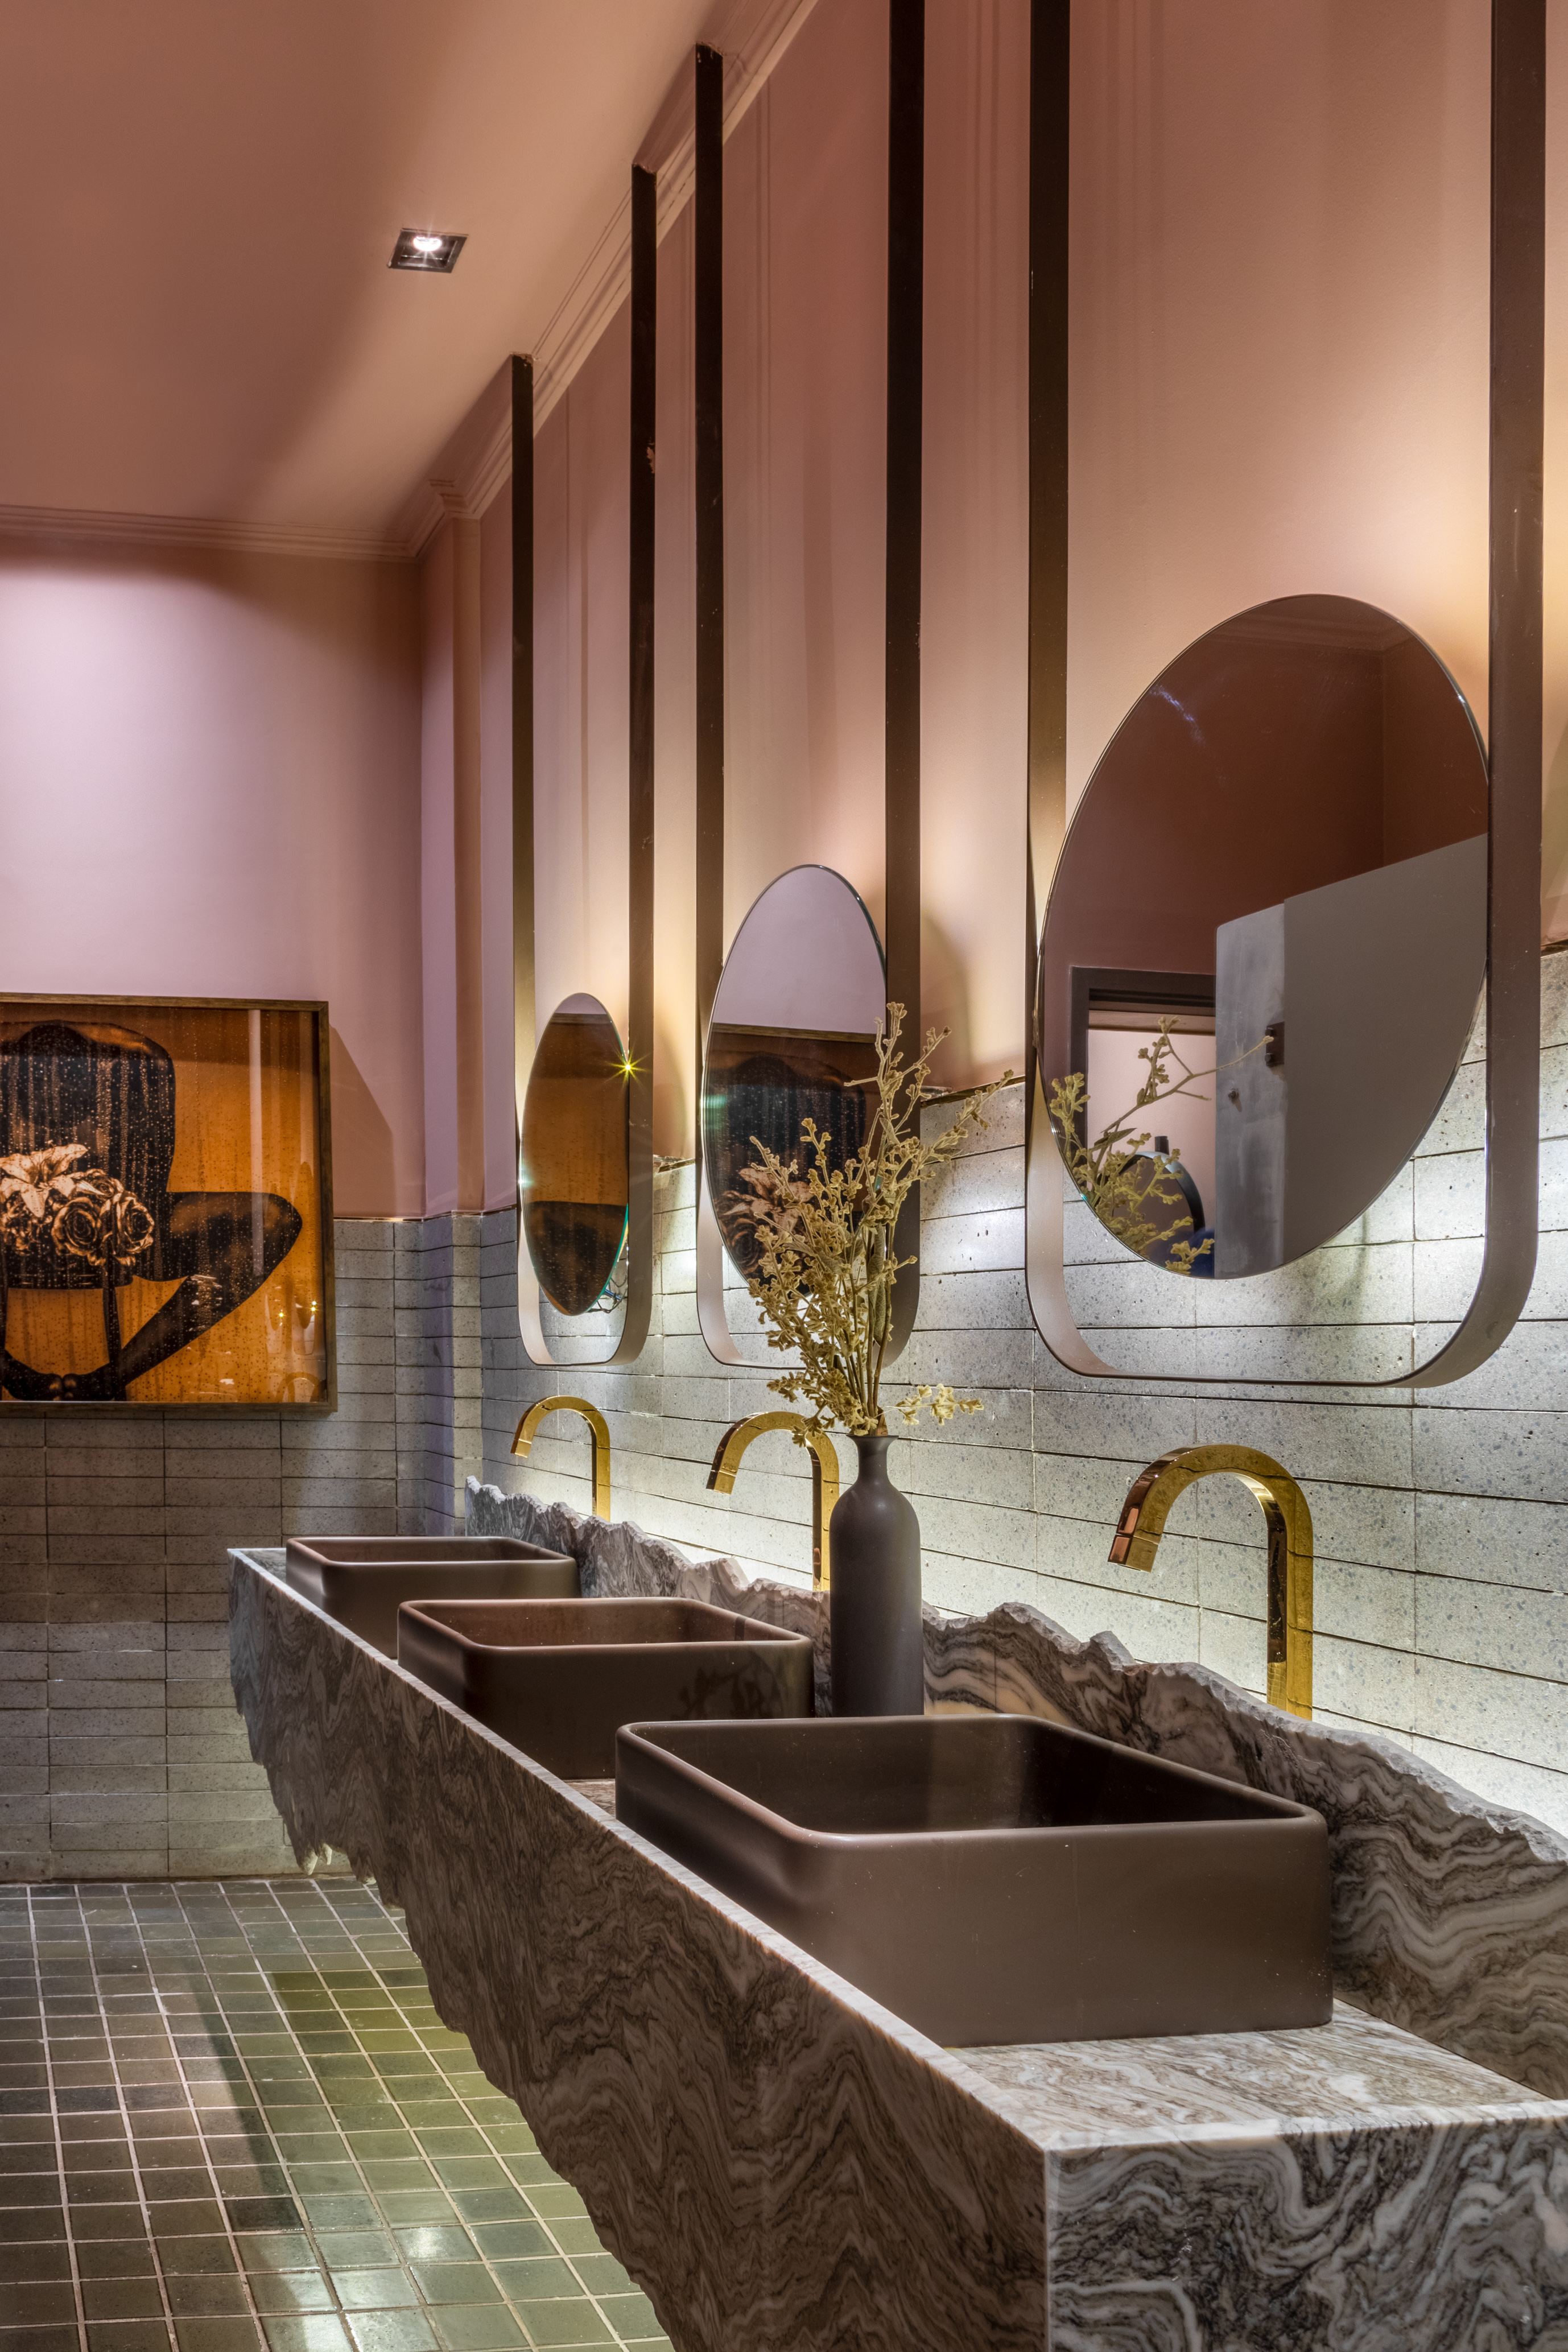 Tripper Arquitetura – Banheiro Elementos. Projeto da CASACOR Rio de Janeiro 2019.